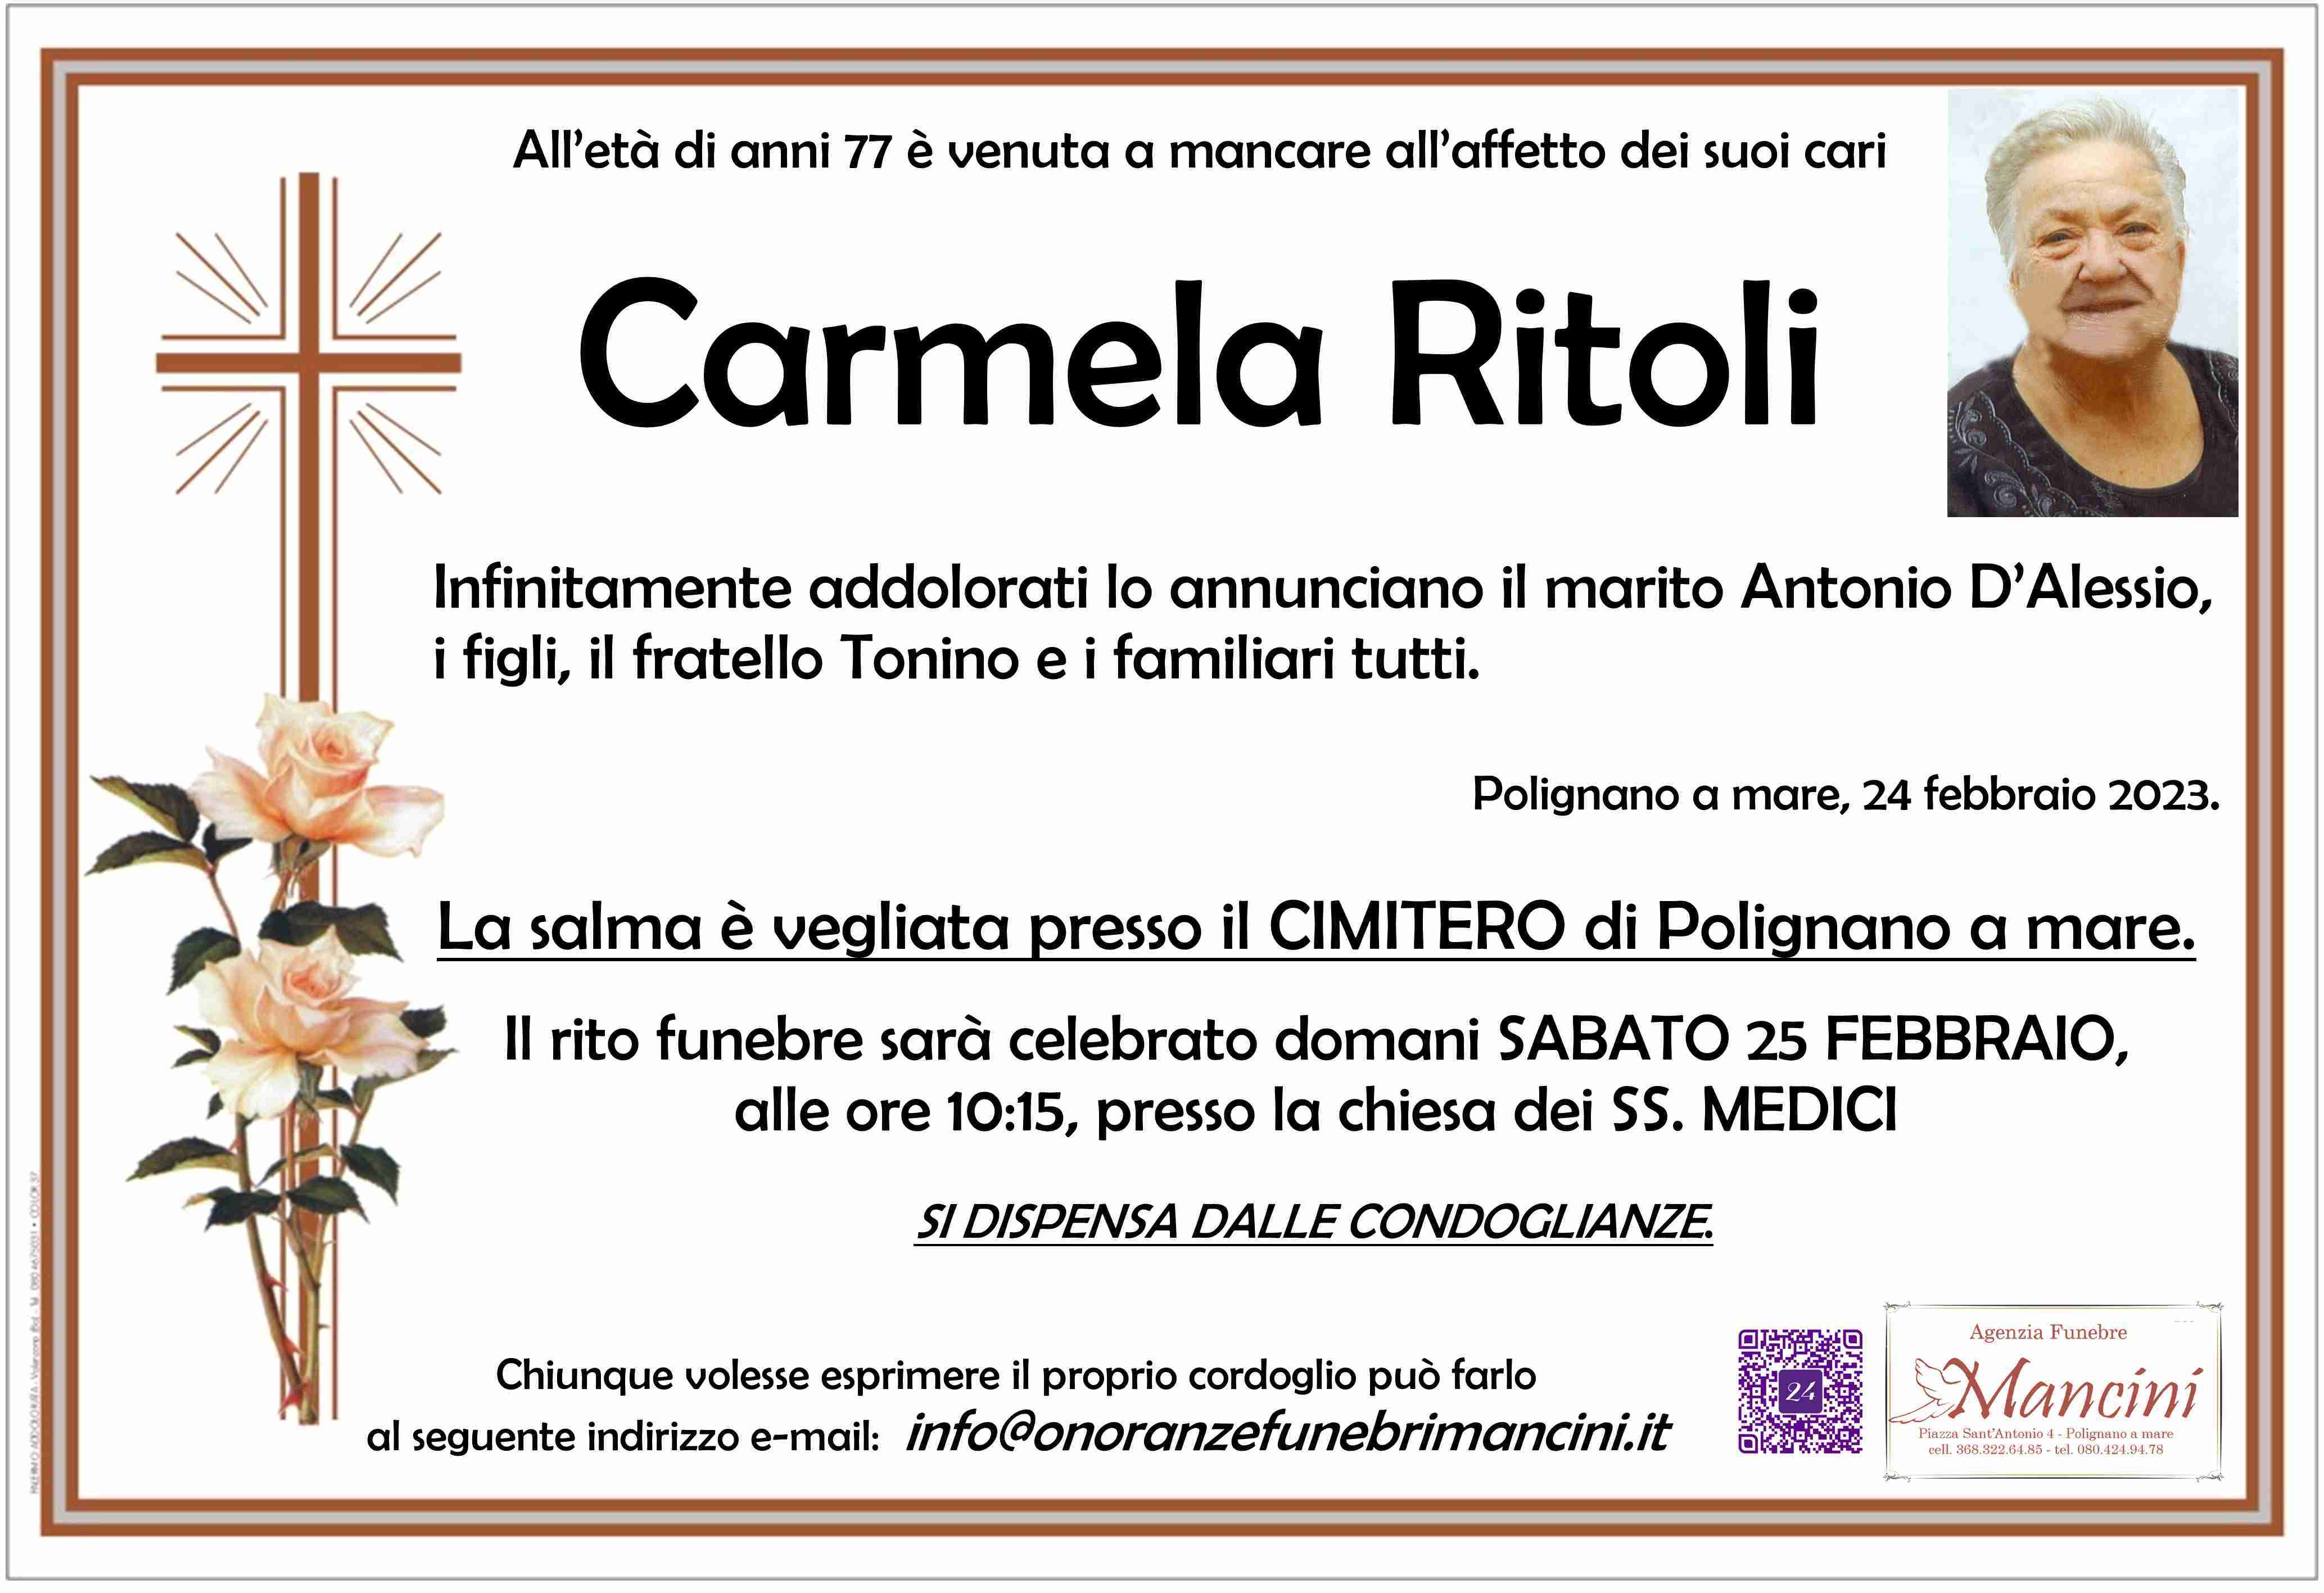 Carmela Ritoli